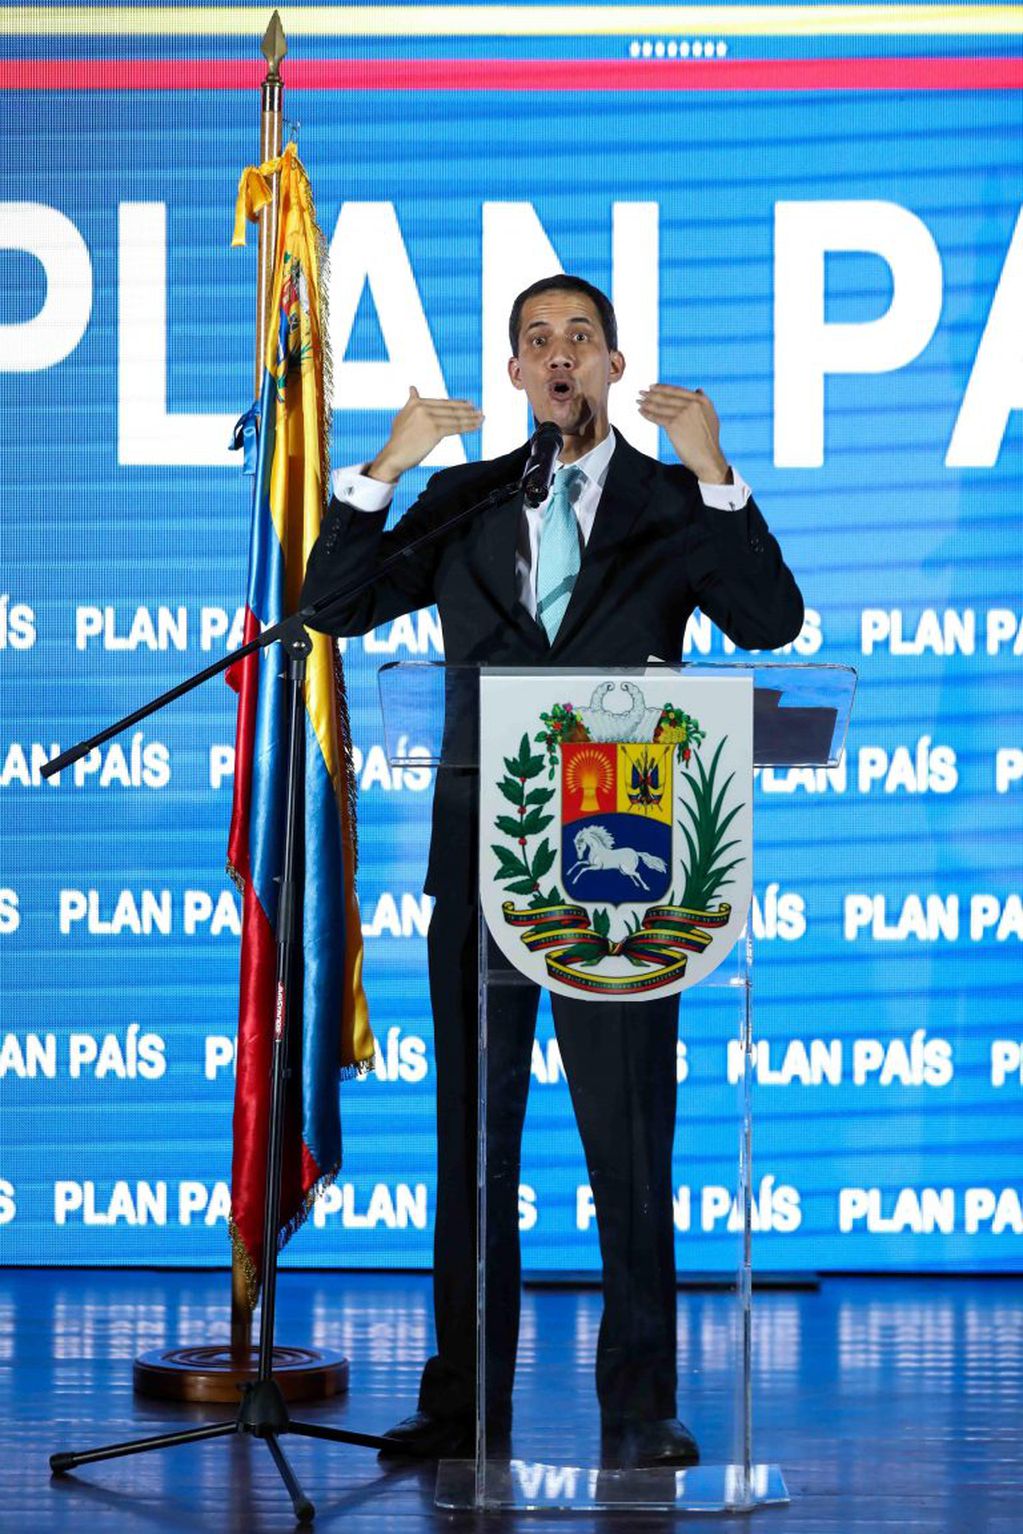 El jefe del Parlamento, Juan Guaidó, presenta el Plan País. Guaidó informó que agentes de la policía fueron a su casa y preguntaron por su esposa, Fabiana Rosales, a quien esperaban interrogar pero ella no estaba.